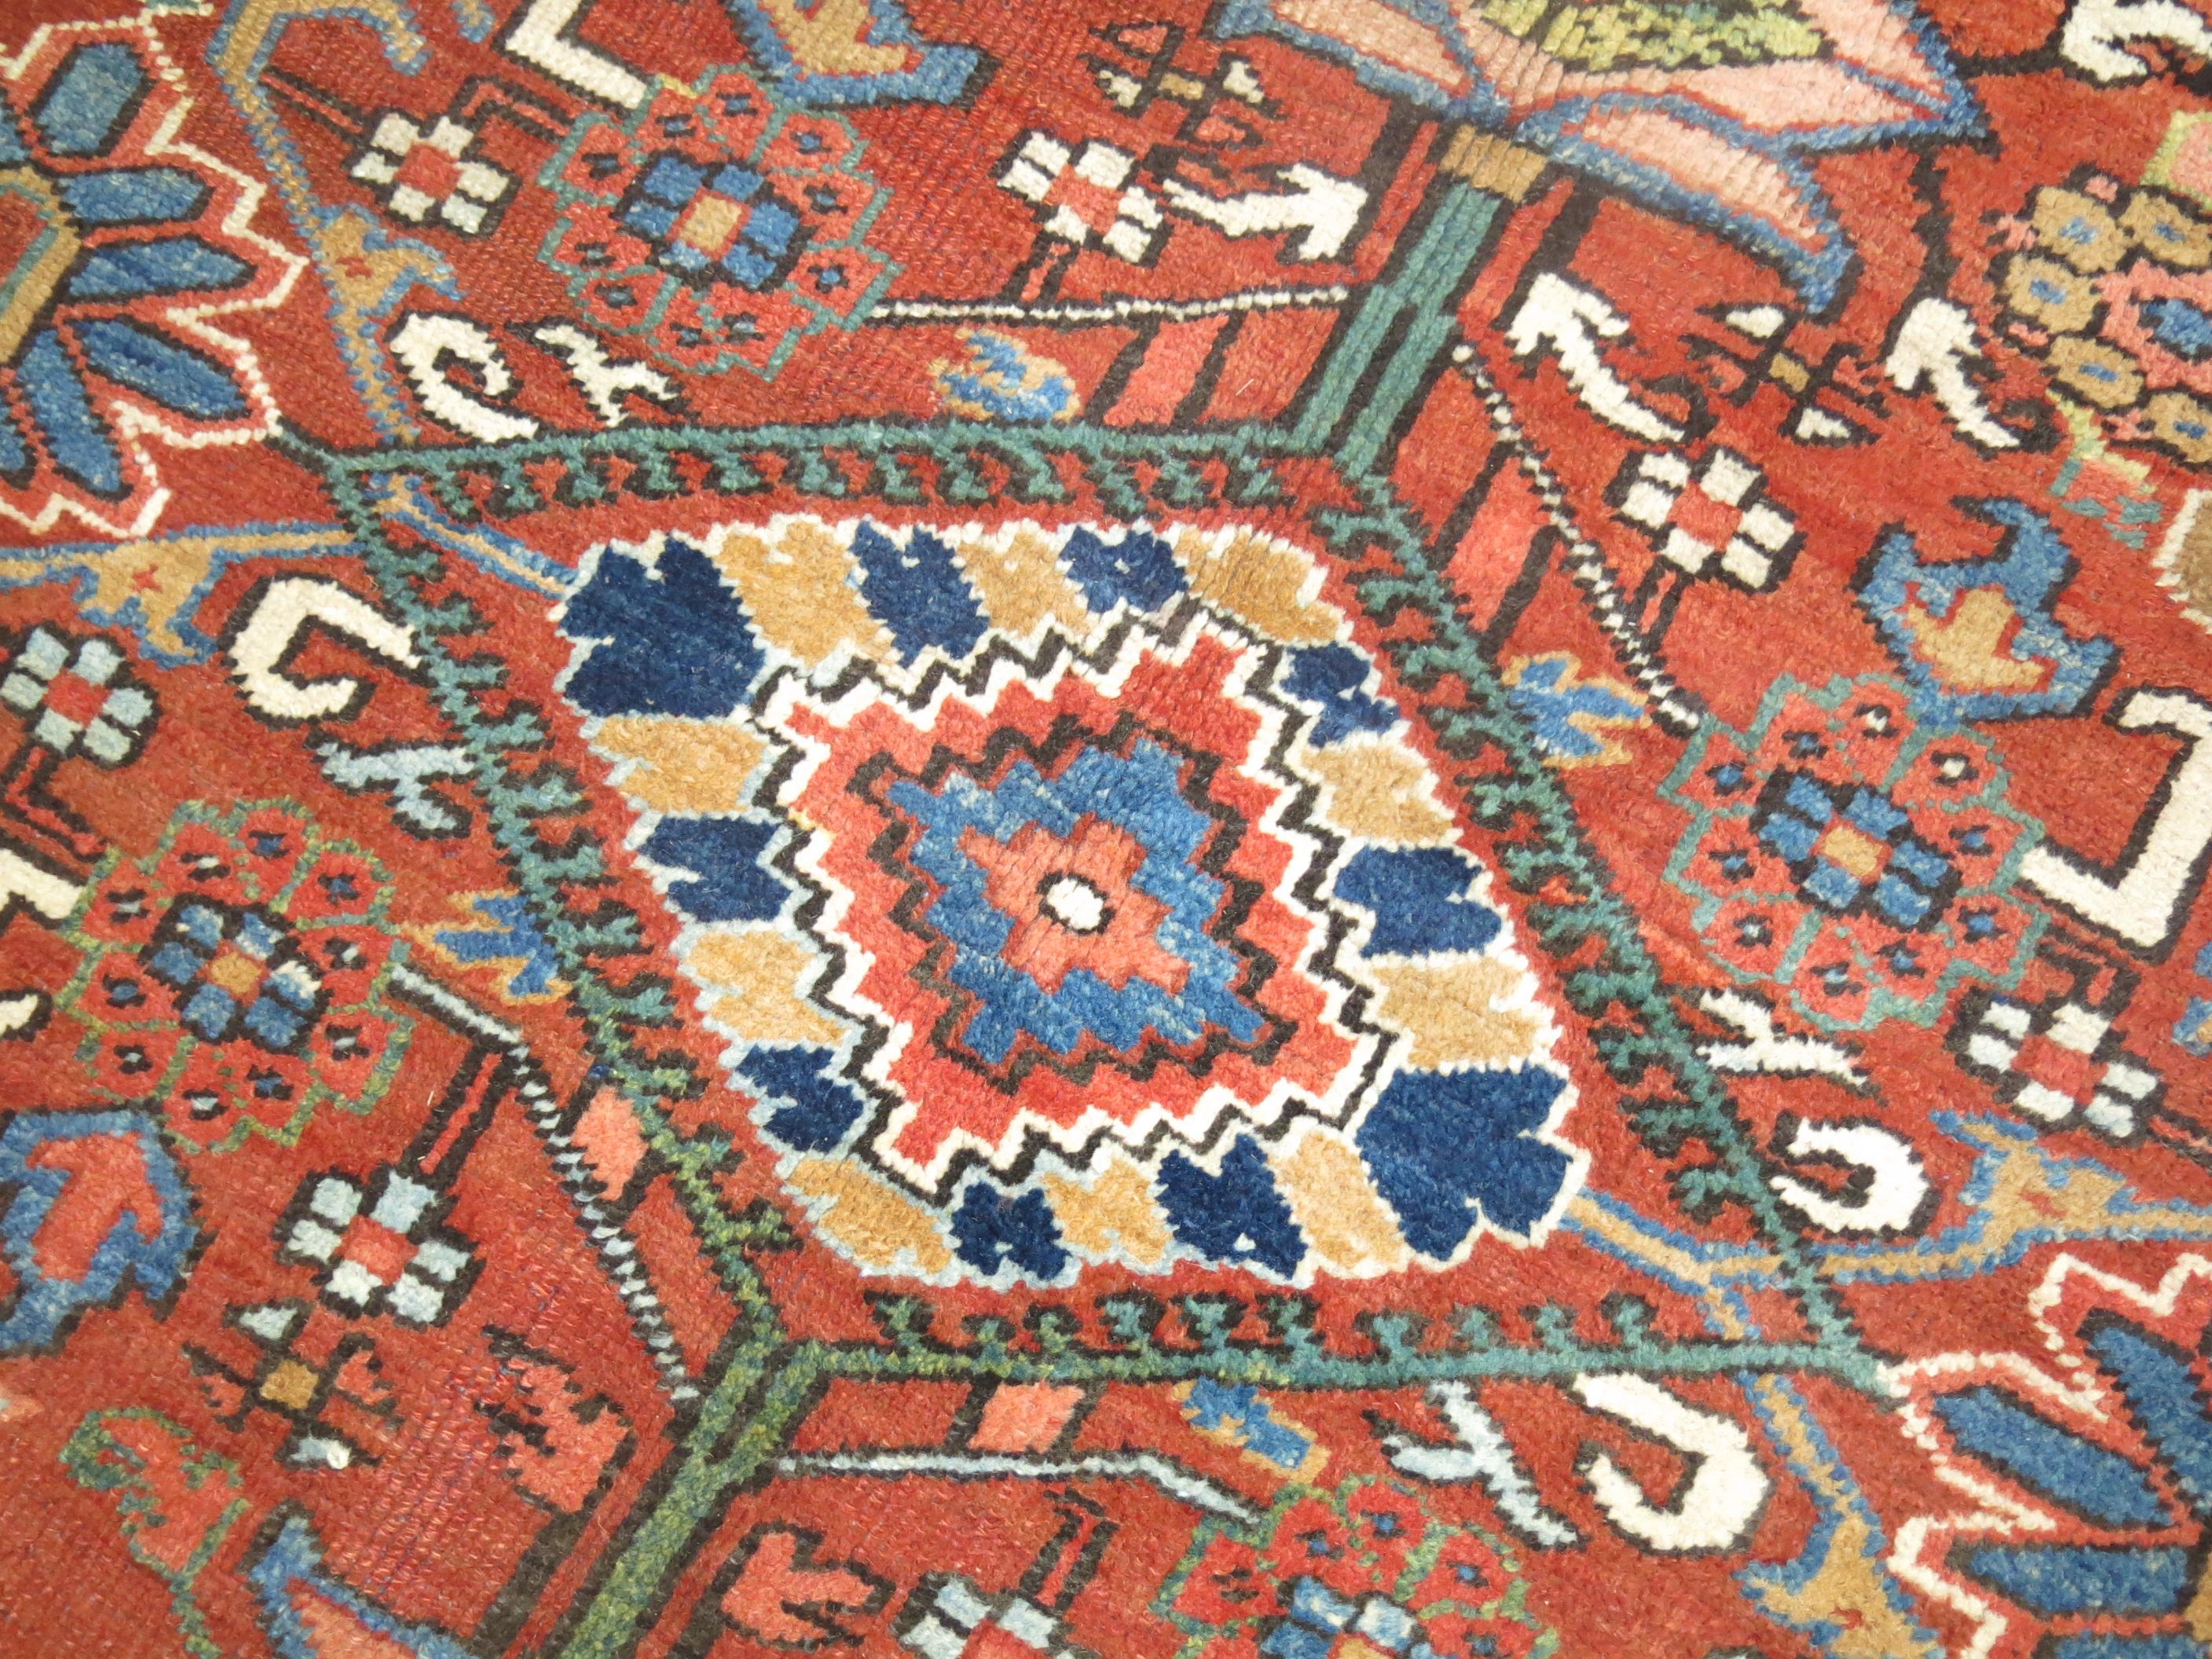 Ein zimmergroßer persischer Heriz-Teppich in Karadscha-Bindung. Orangerotes Feld, marineblauer Rand. Akzente in Hellgrün und Himmelblau. Überzeugendes All-Over-Design.

8'11'' x 10'8''

Heriz-Teppiche sind wegen ihrer Vielseitigkeit beliebt. Ihre